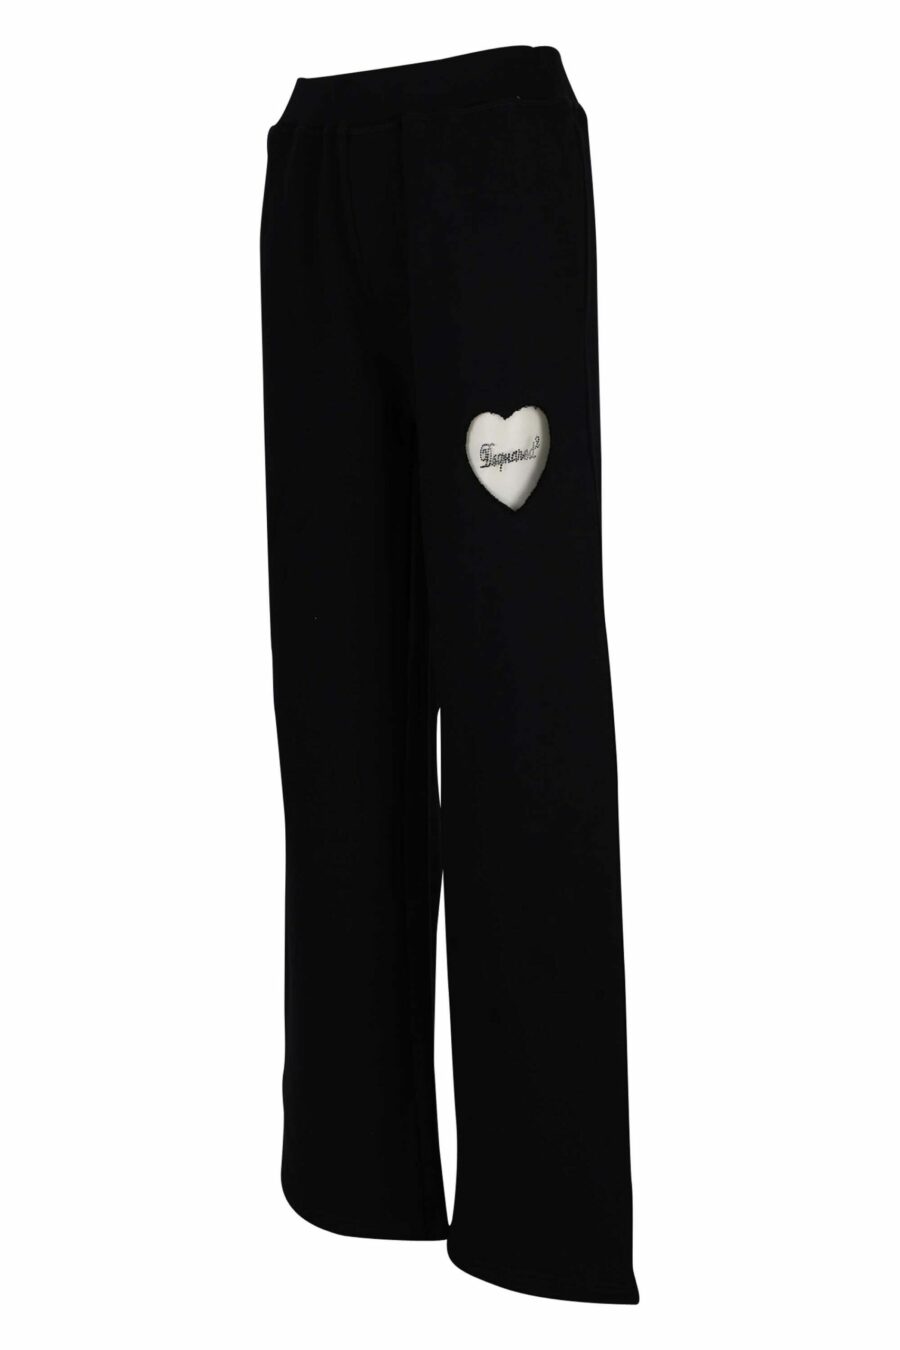 Pantalón negro con logo corazón transparente - 8054148304249 1 scaled